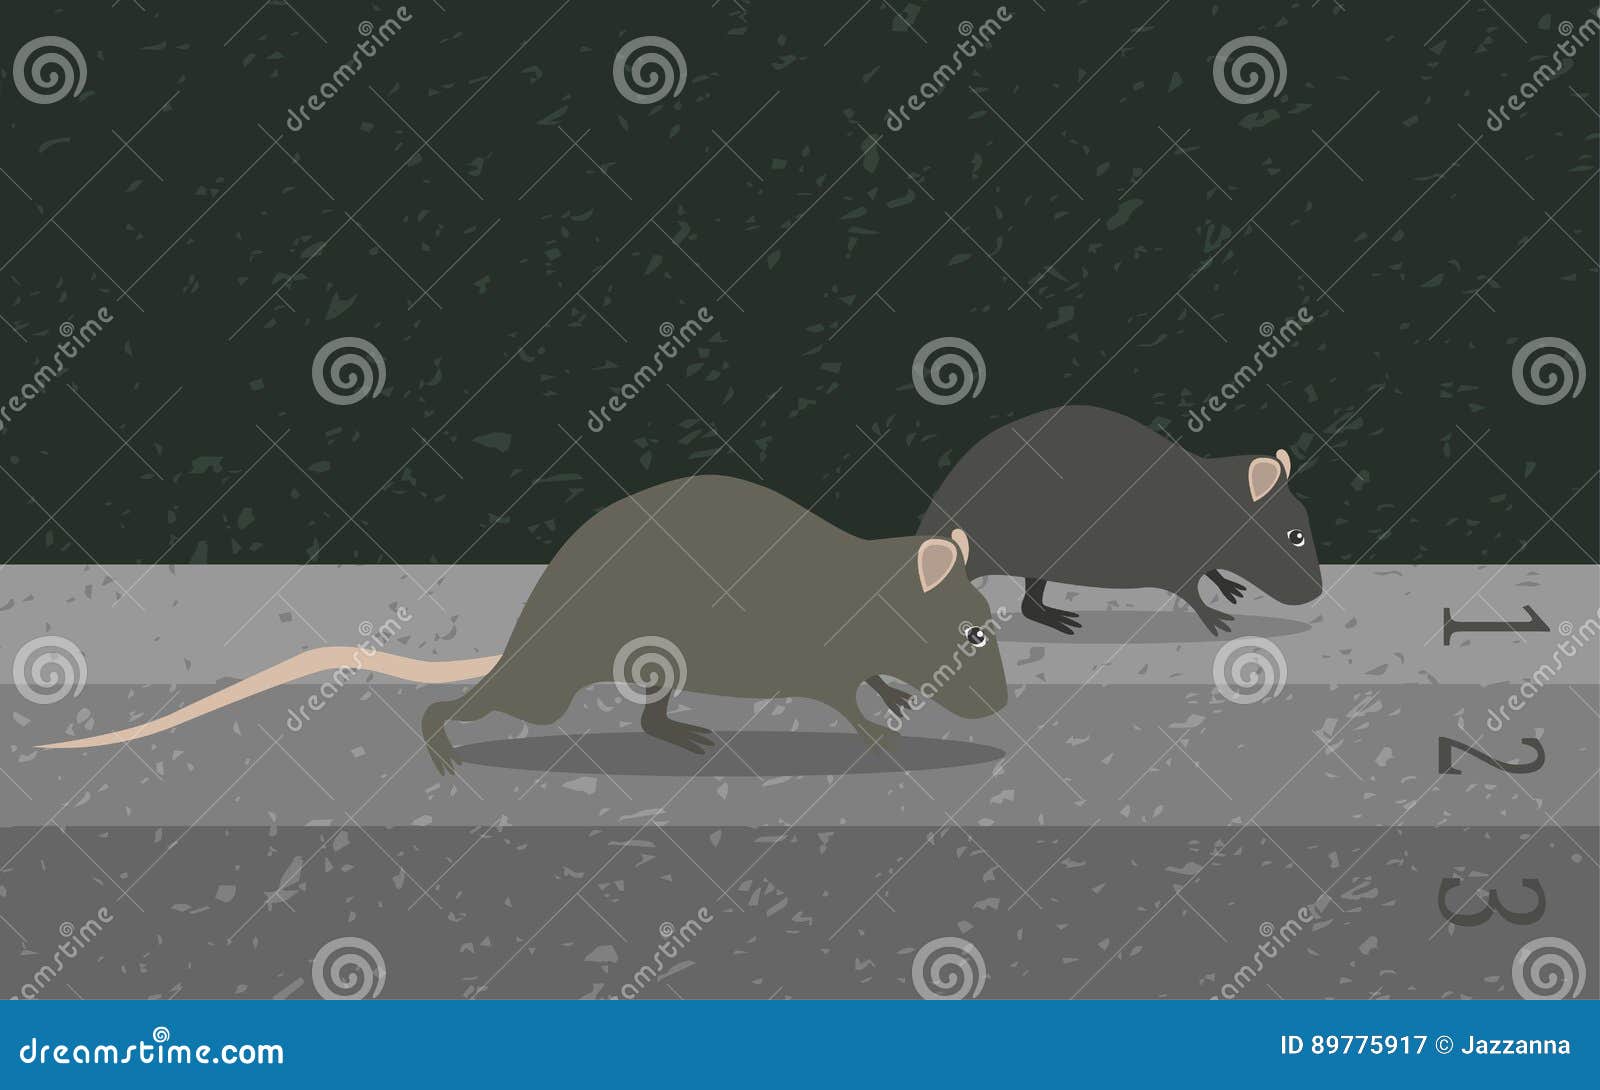 Крысиный бег аудиокнига слушать. Мышиная гонка. Крысиные гонки. Крысиный бег иллюстрации. Люди метафора крысы.